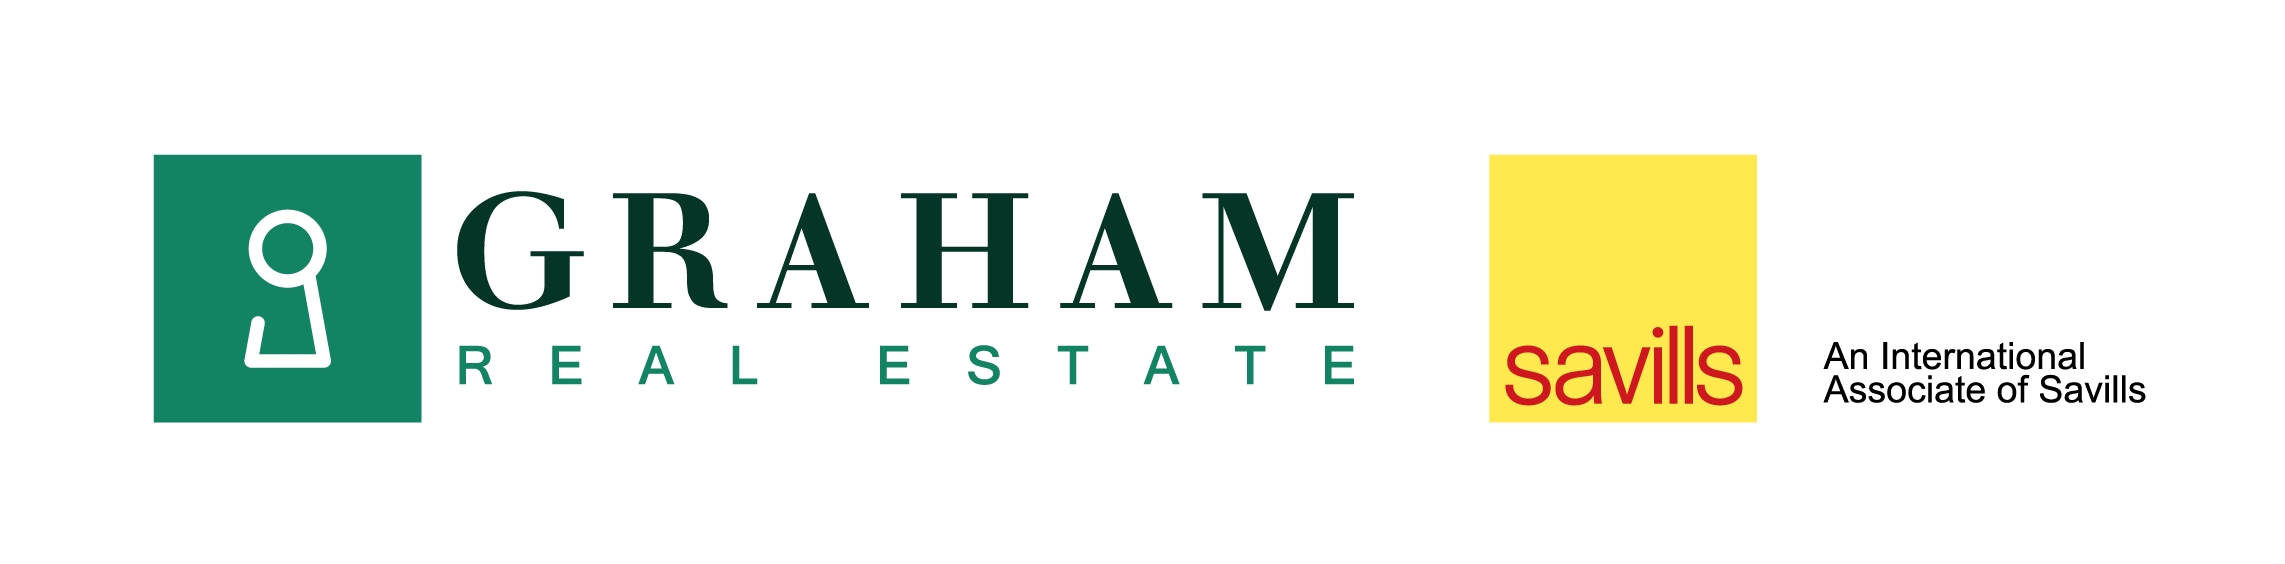 Graham Real Estate Logo